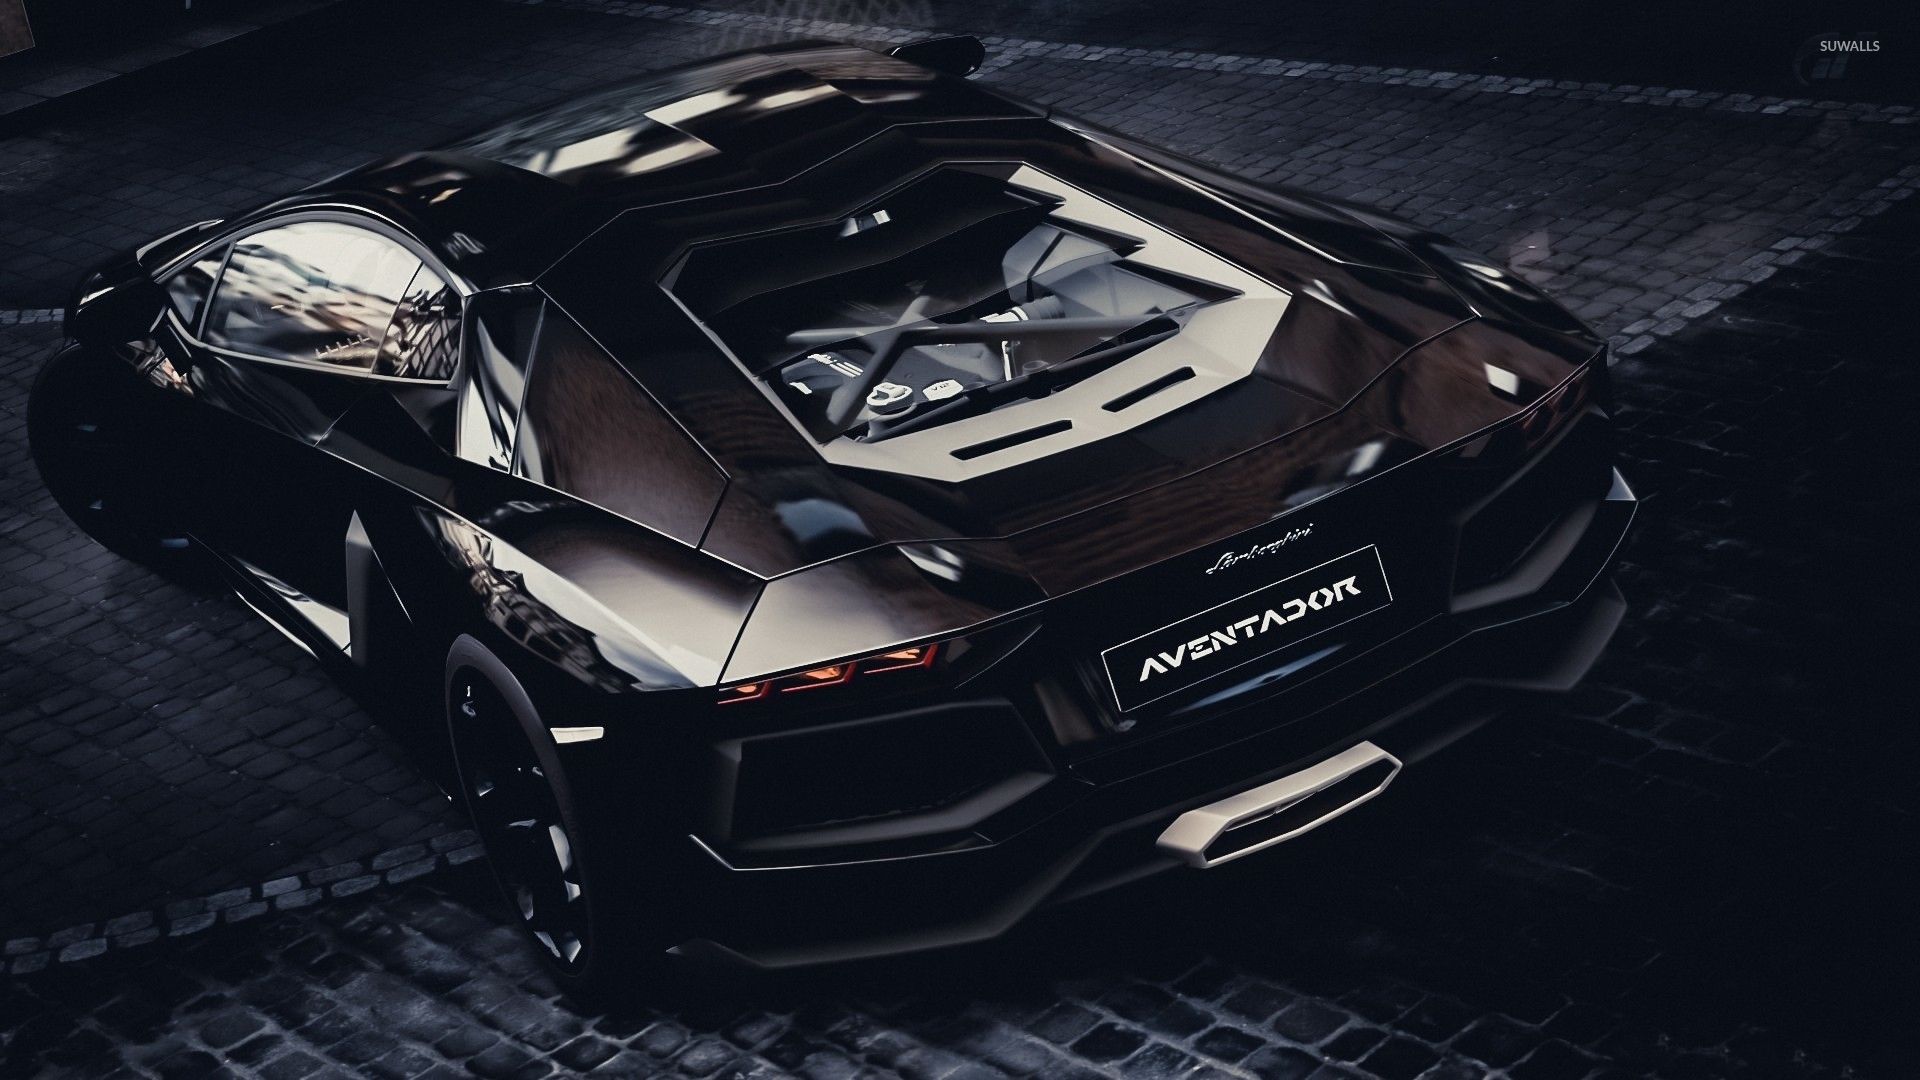 Top view of a black Lamborghini Aventador wallpaper wallpaper